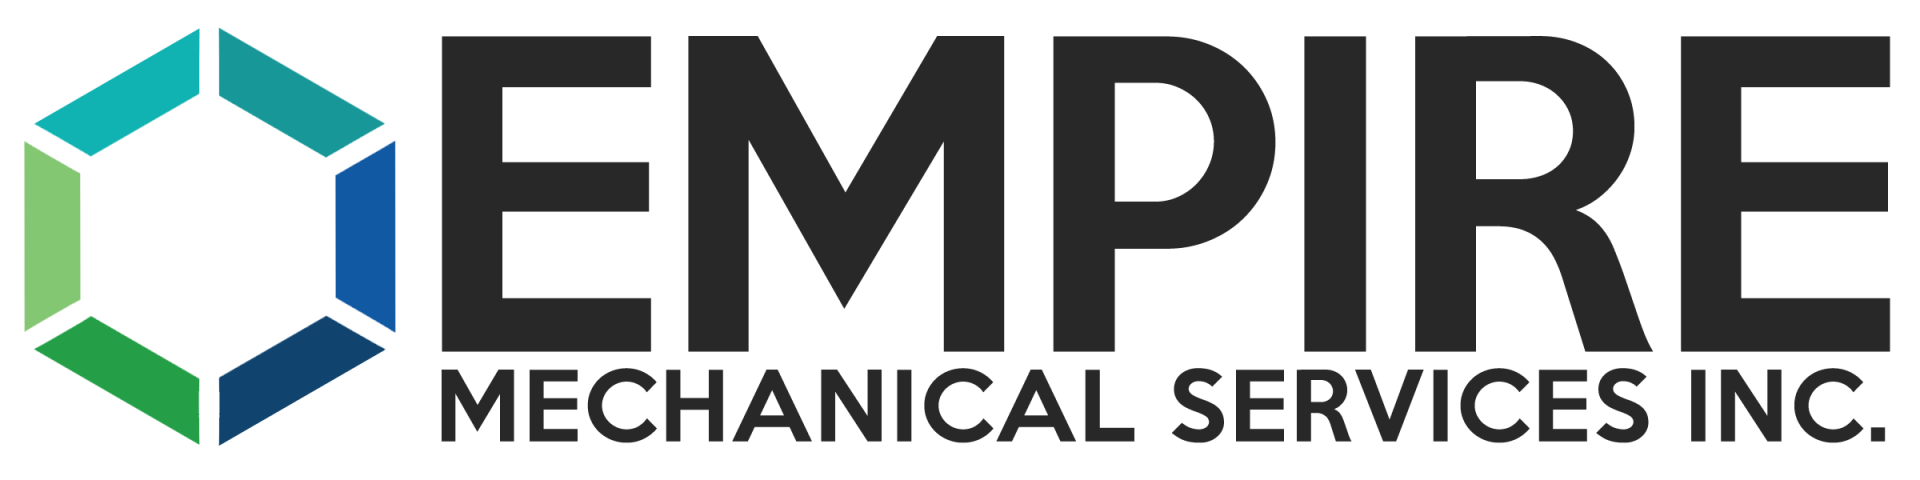 Empire Mechanical Services Inc company logo